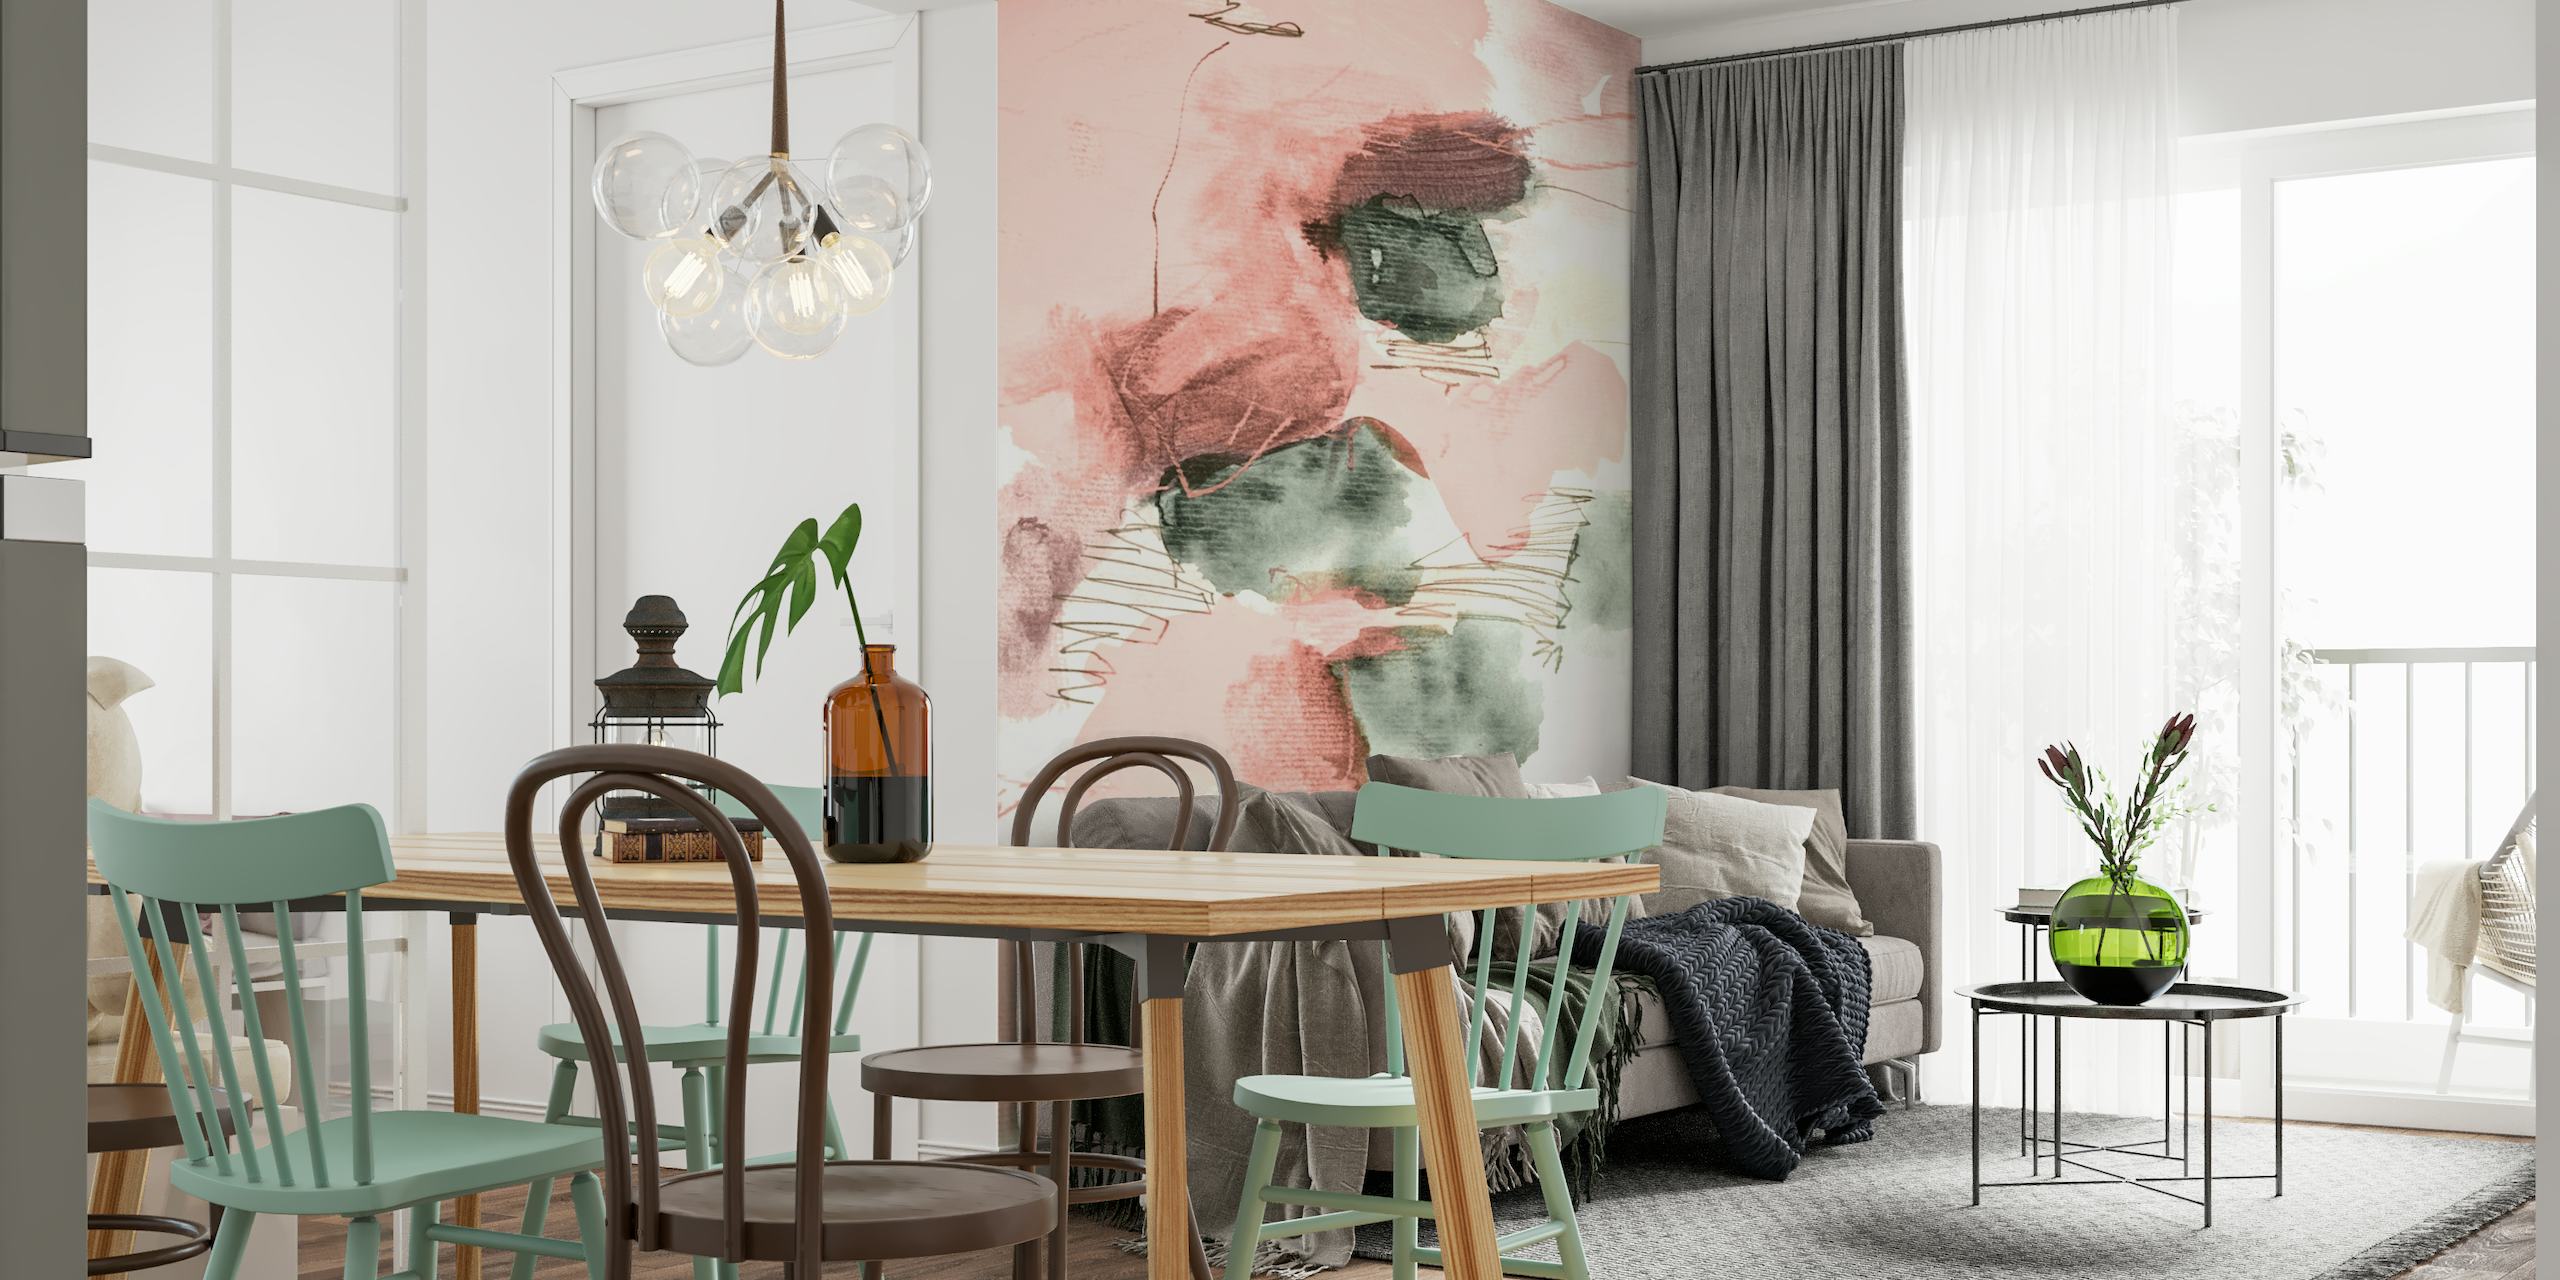 Abstraktes Wandbild in sanften Pastellfarben mit Röte-, Creme- und gedämpften Grüntönen